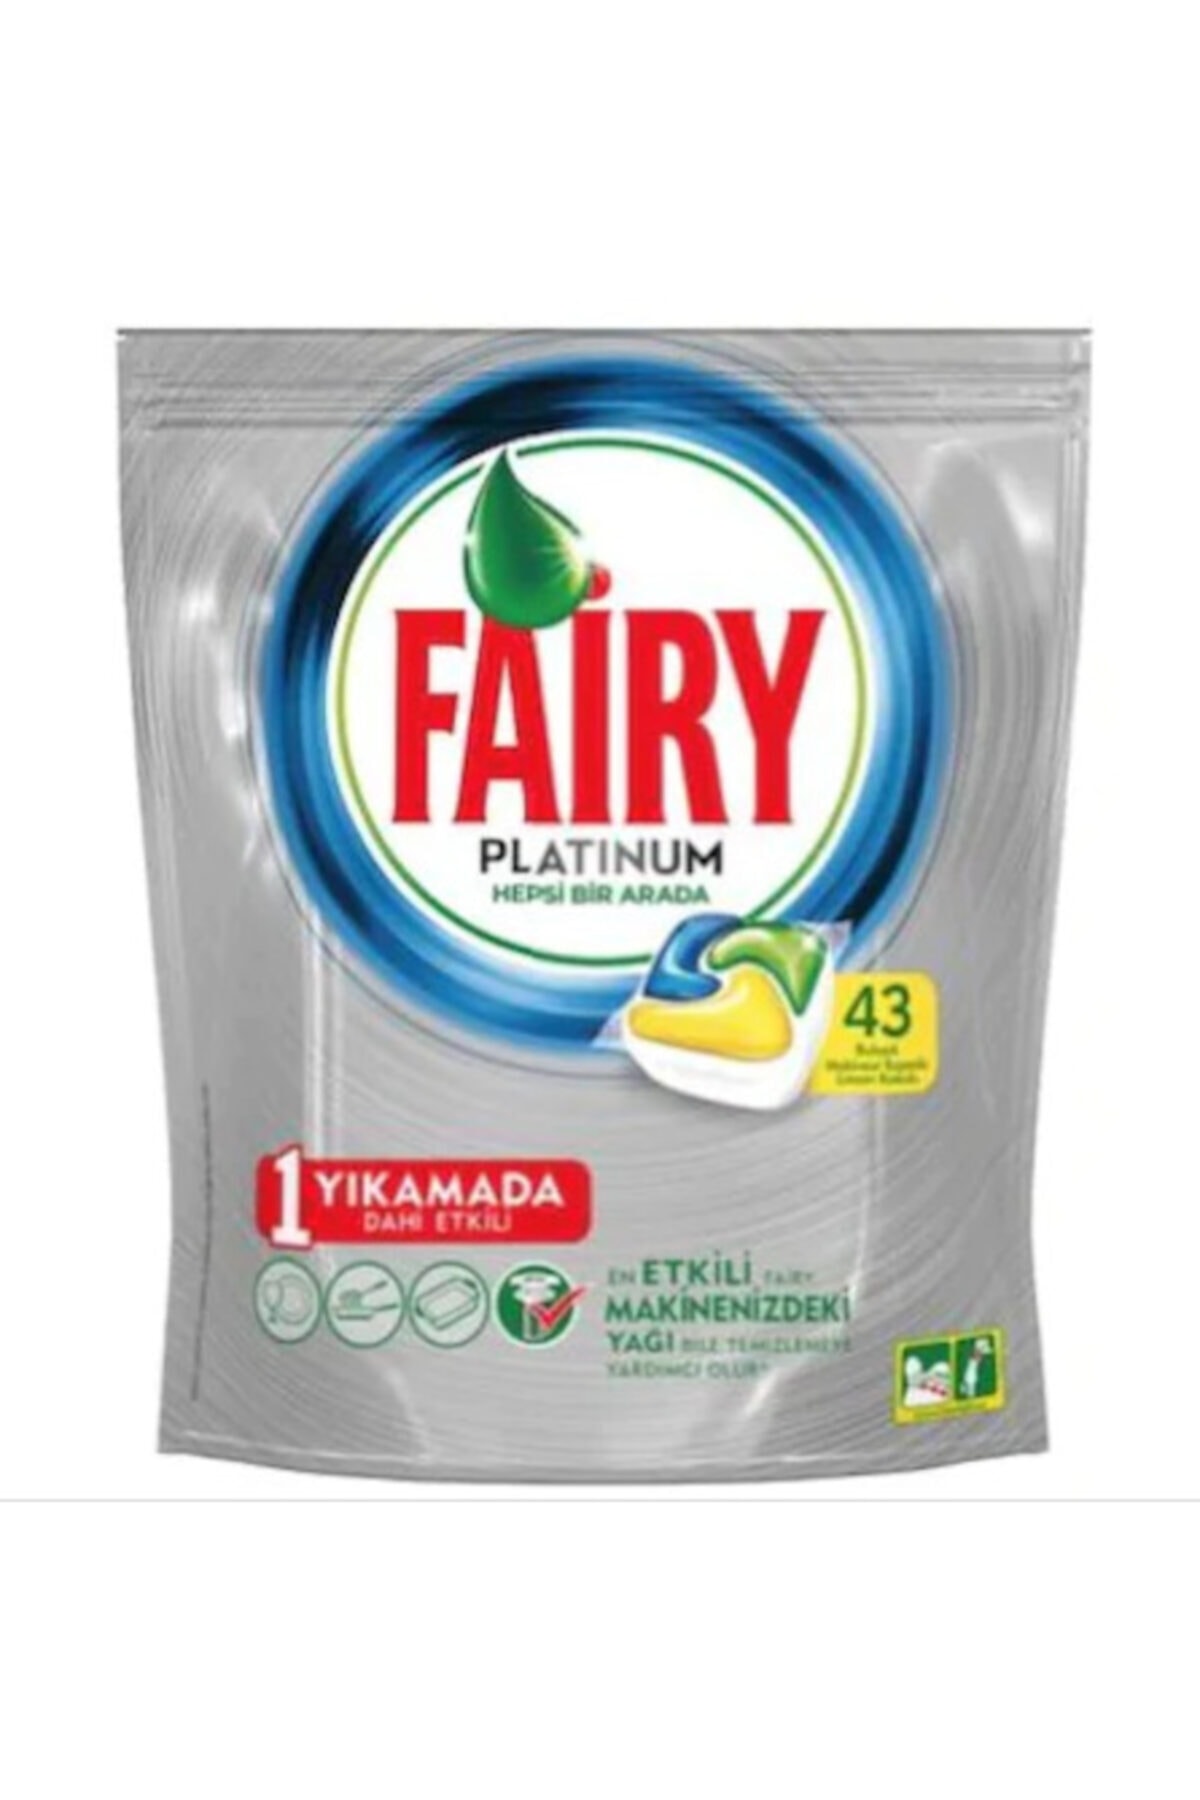 Fairy Platinum Limon Kokulu Bulaşık Makinesi Deterjanı 43 Tablet